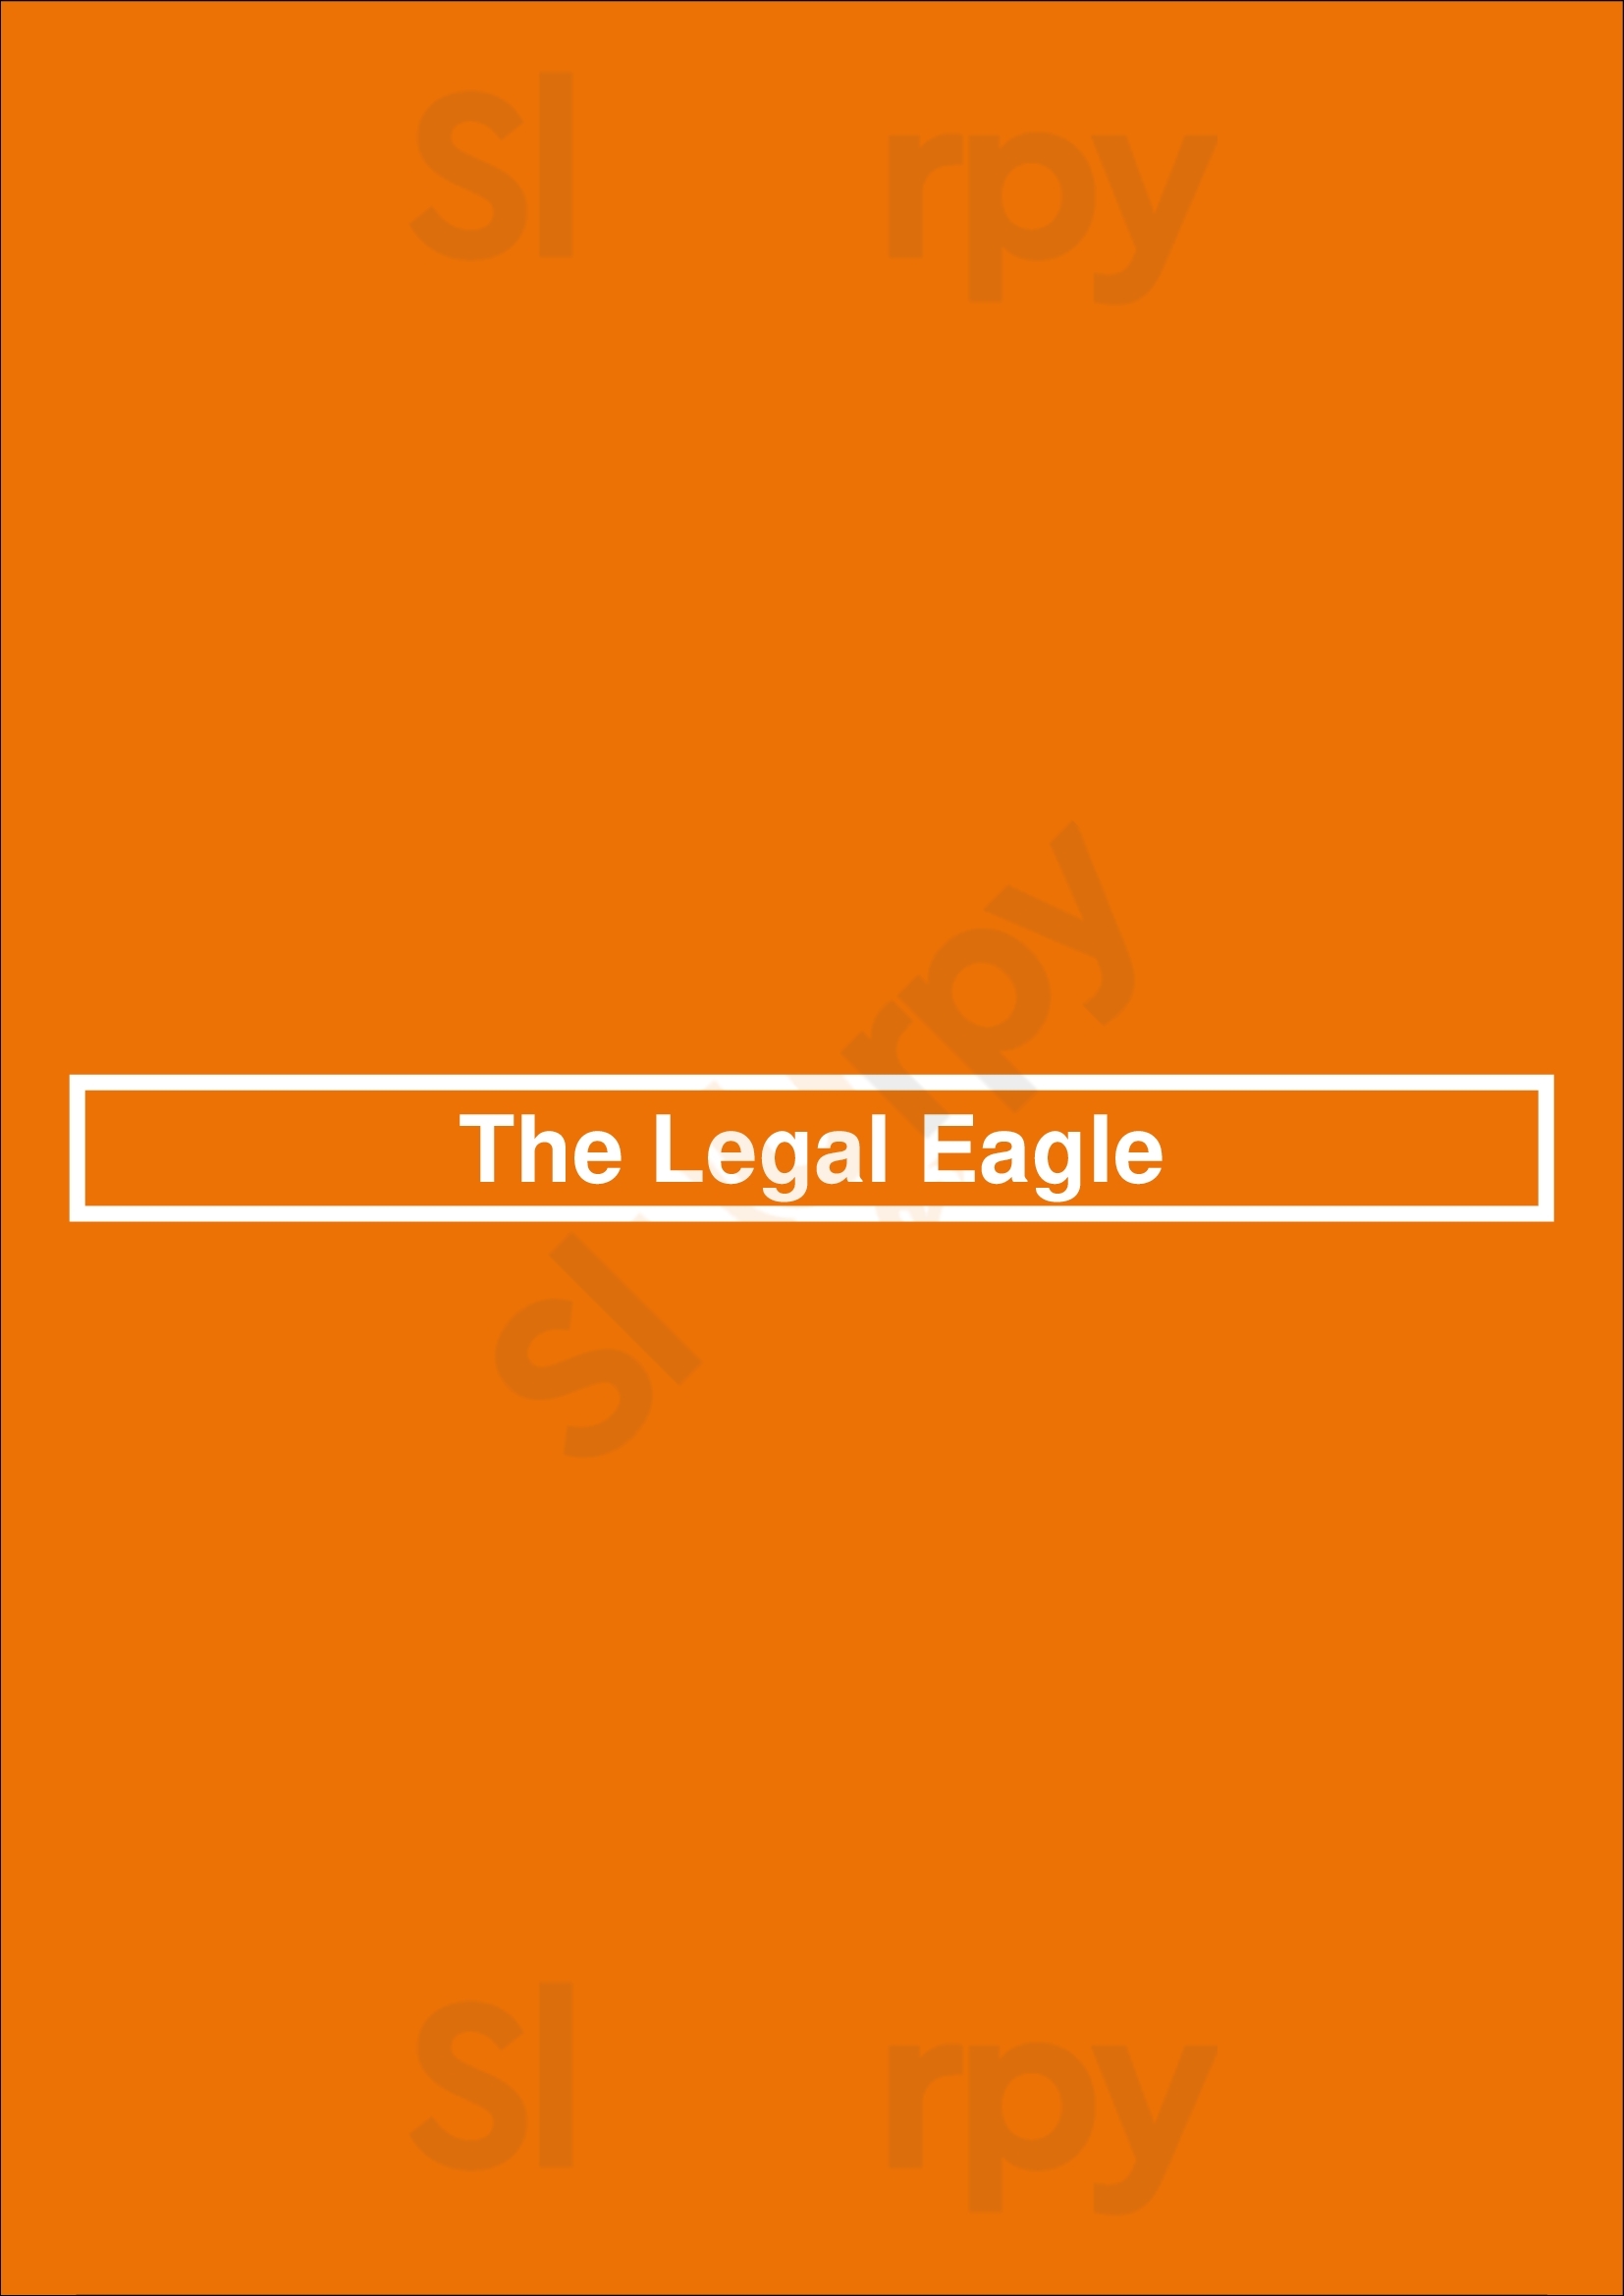 The Legal Eagle Dublin Menu - 1